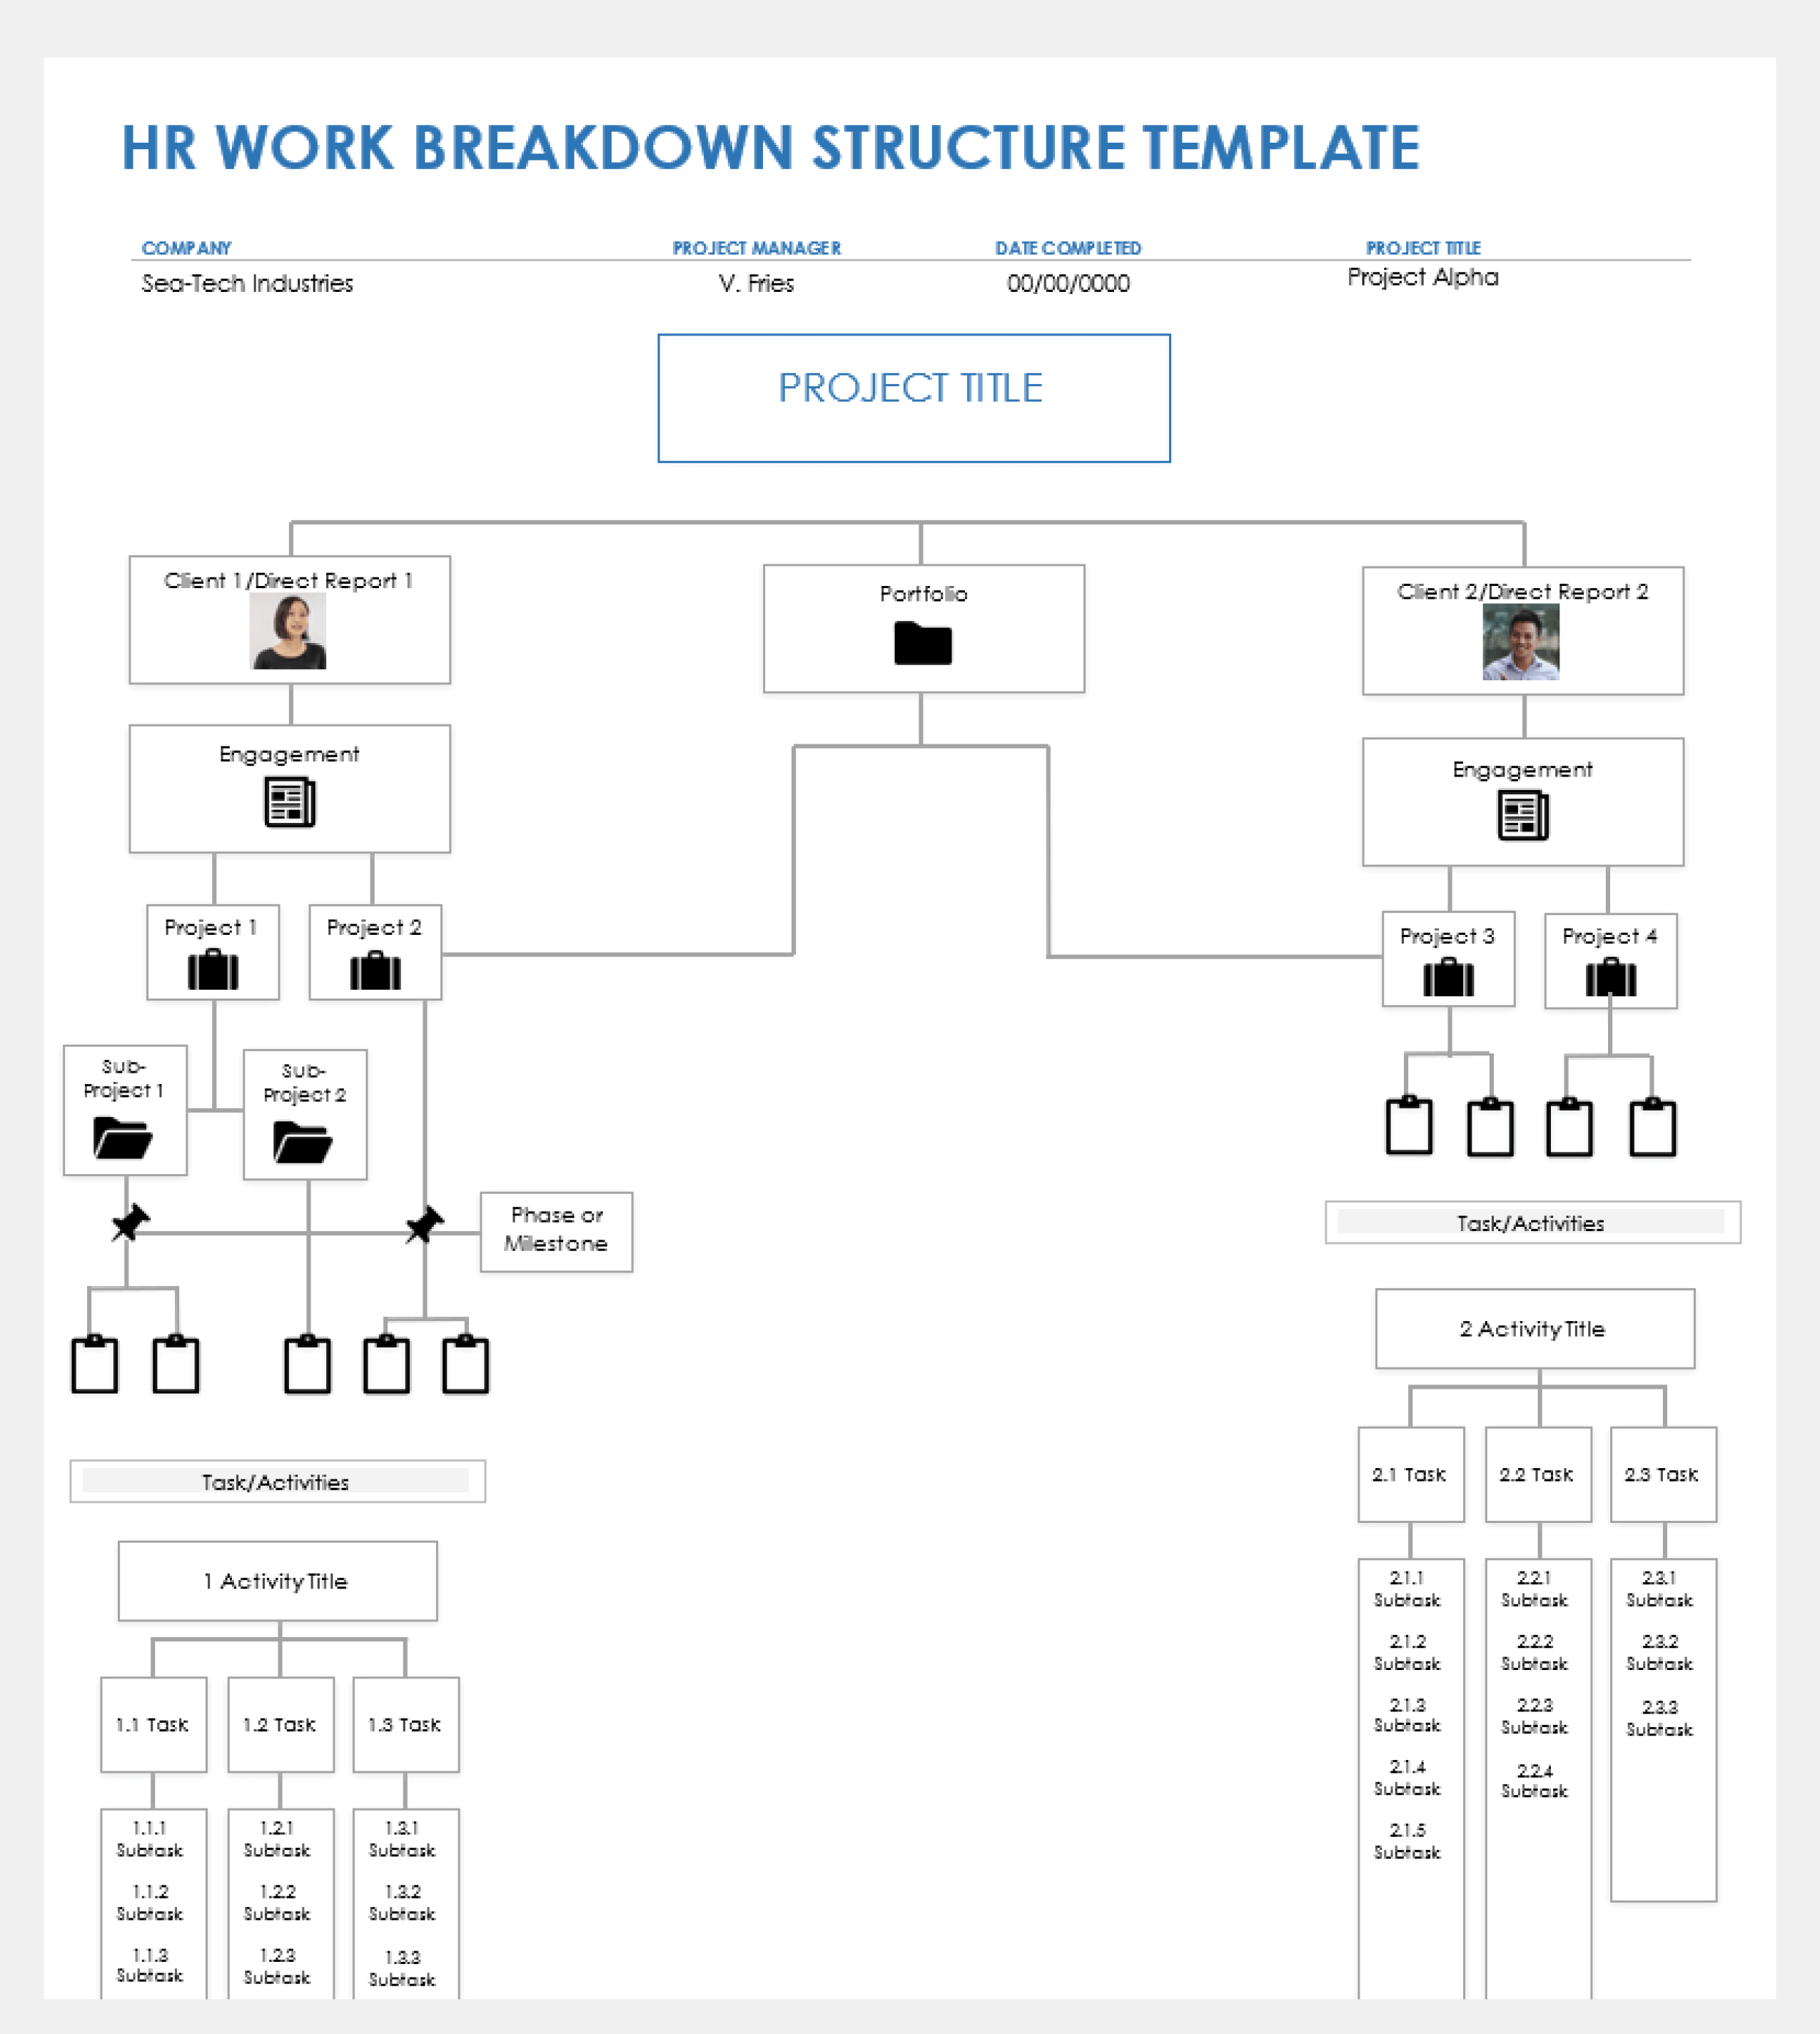 HR Work Breakdown Structure Template